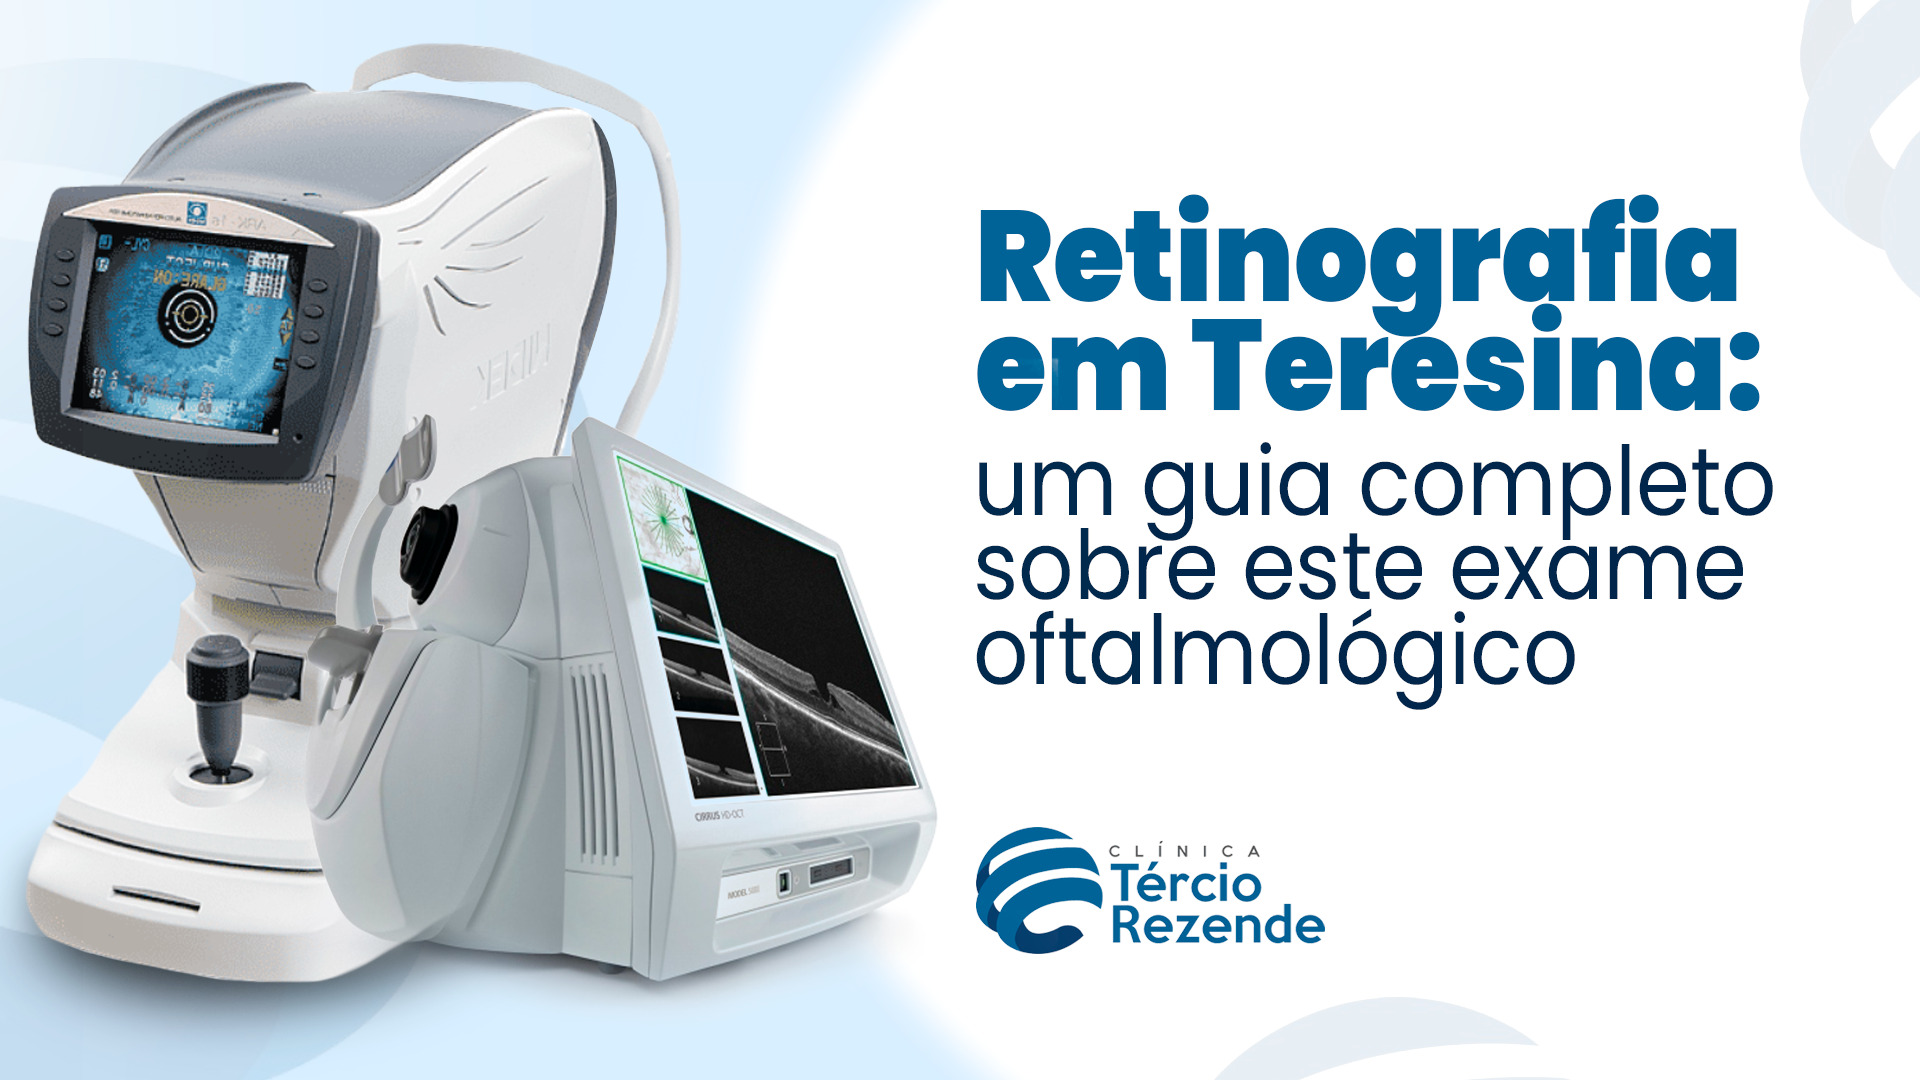 Retinografia em Teresina: um guia completo sobre este exame oftalmológico